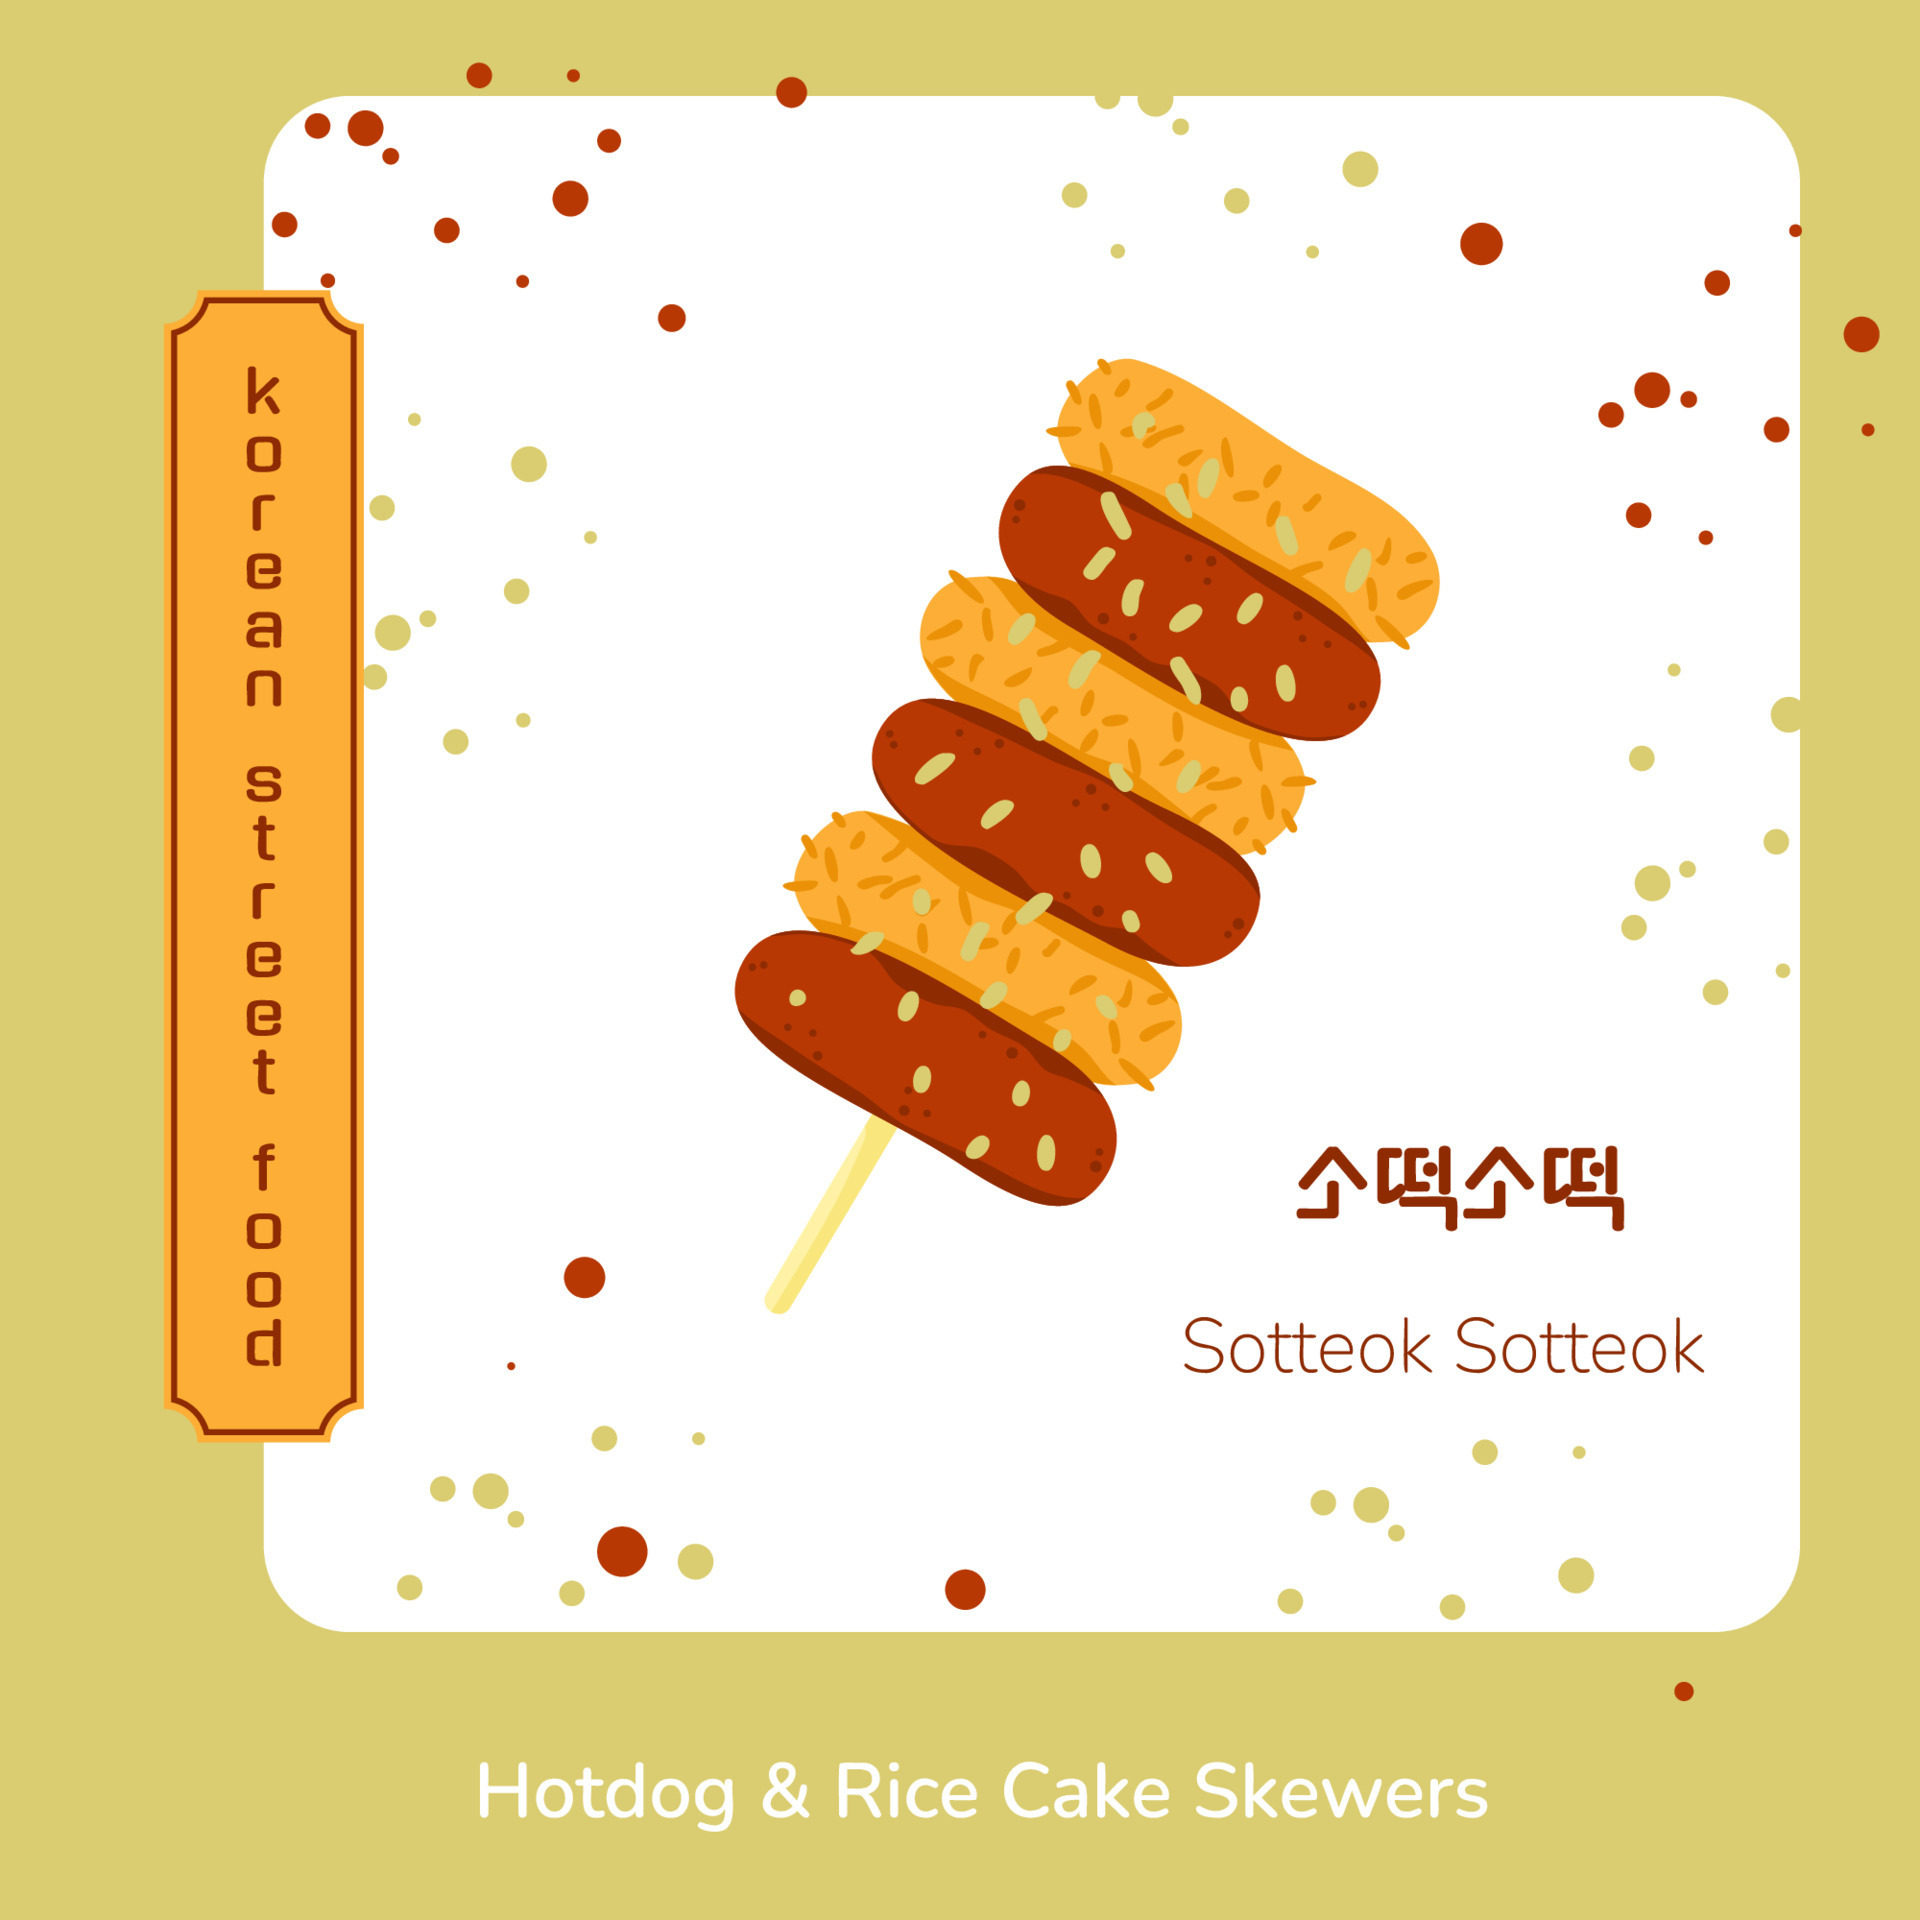 espetos de bolo de arroz de comida de rua tradicional coreana. coreano  sotteok sotteok. tradução de espetos de bolo de arroz coreano. salsichas  fritas bolos de arroz no palito em turnos. lanche